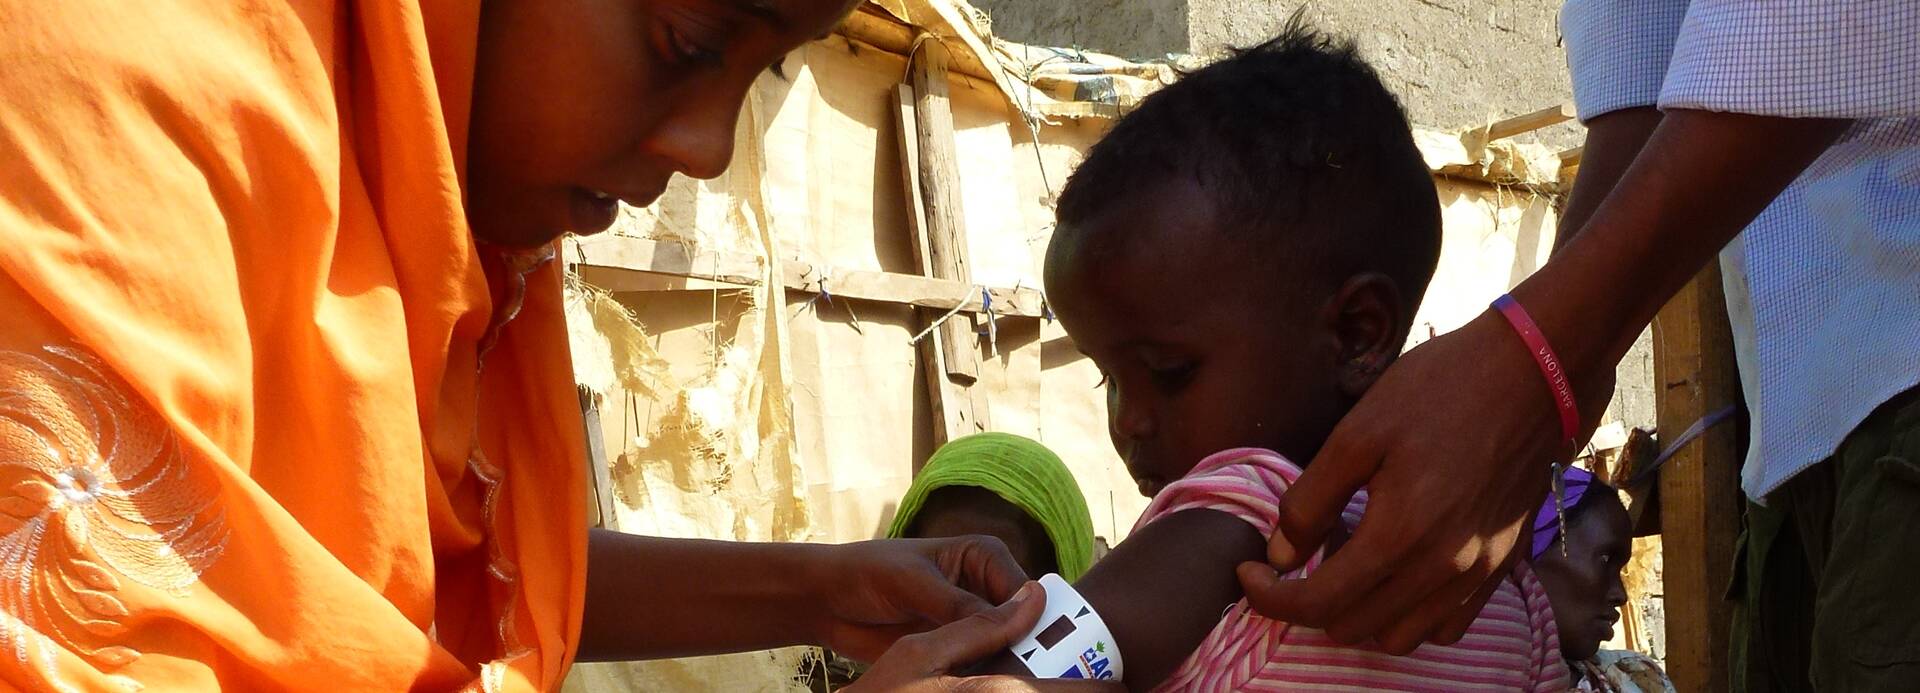 Mitarbeiterin von Aktion gegen den Hunger behandelt Kind in Dschibuti